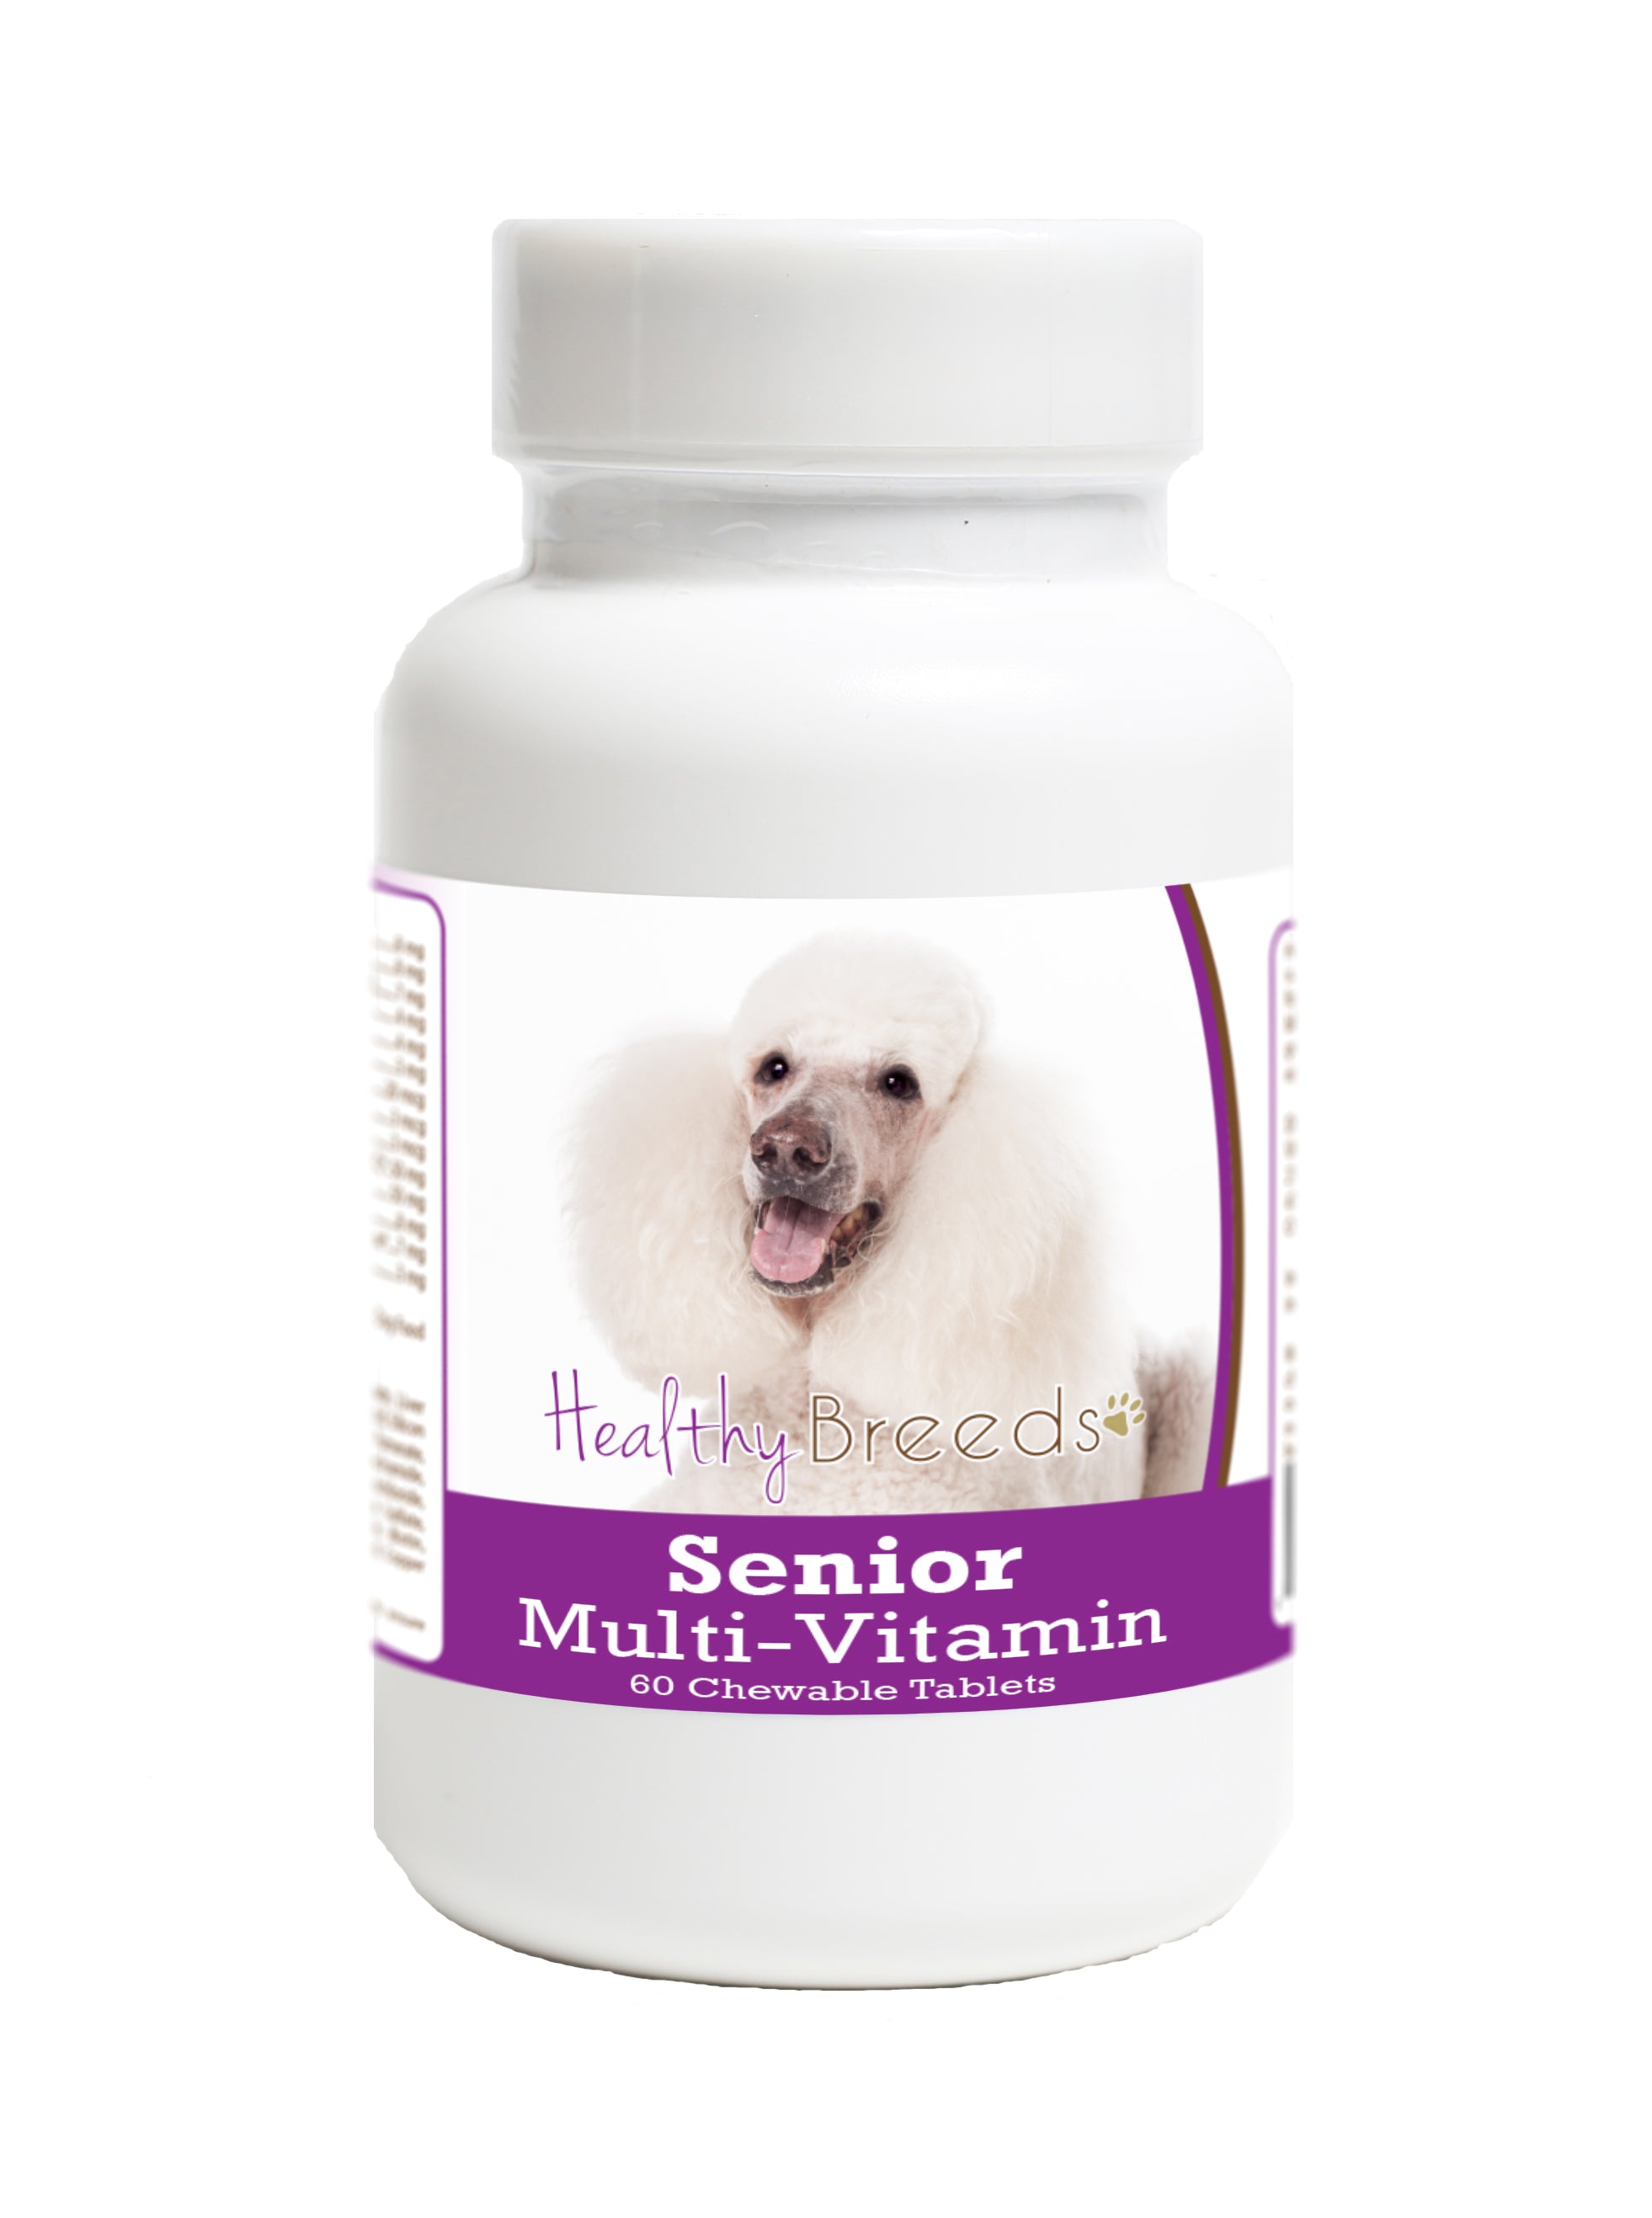 Poodle Senior Dog Multivitamin Tablets 60 Count